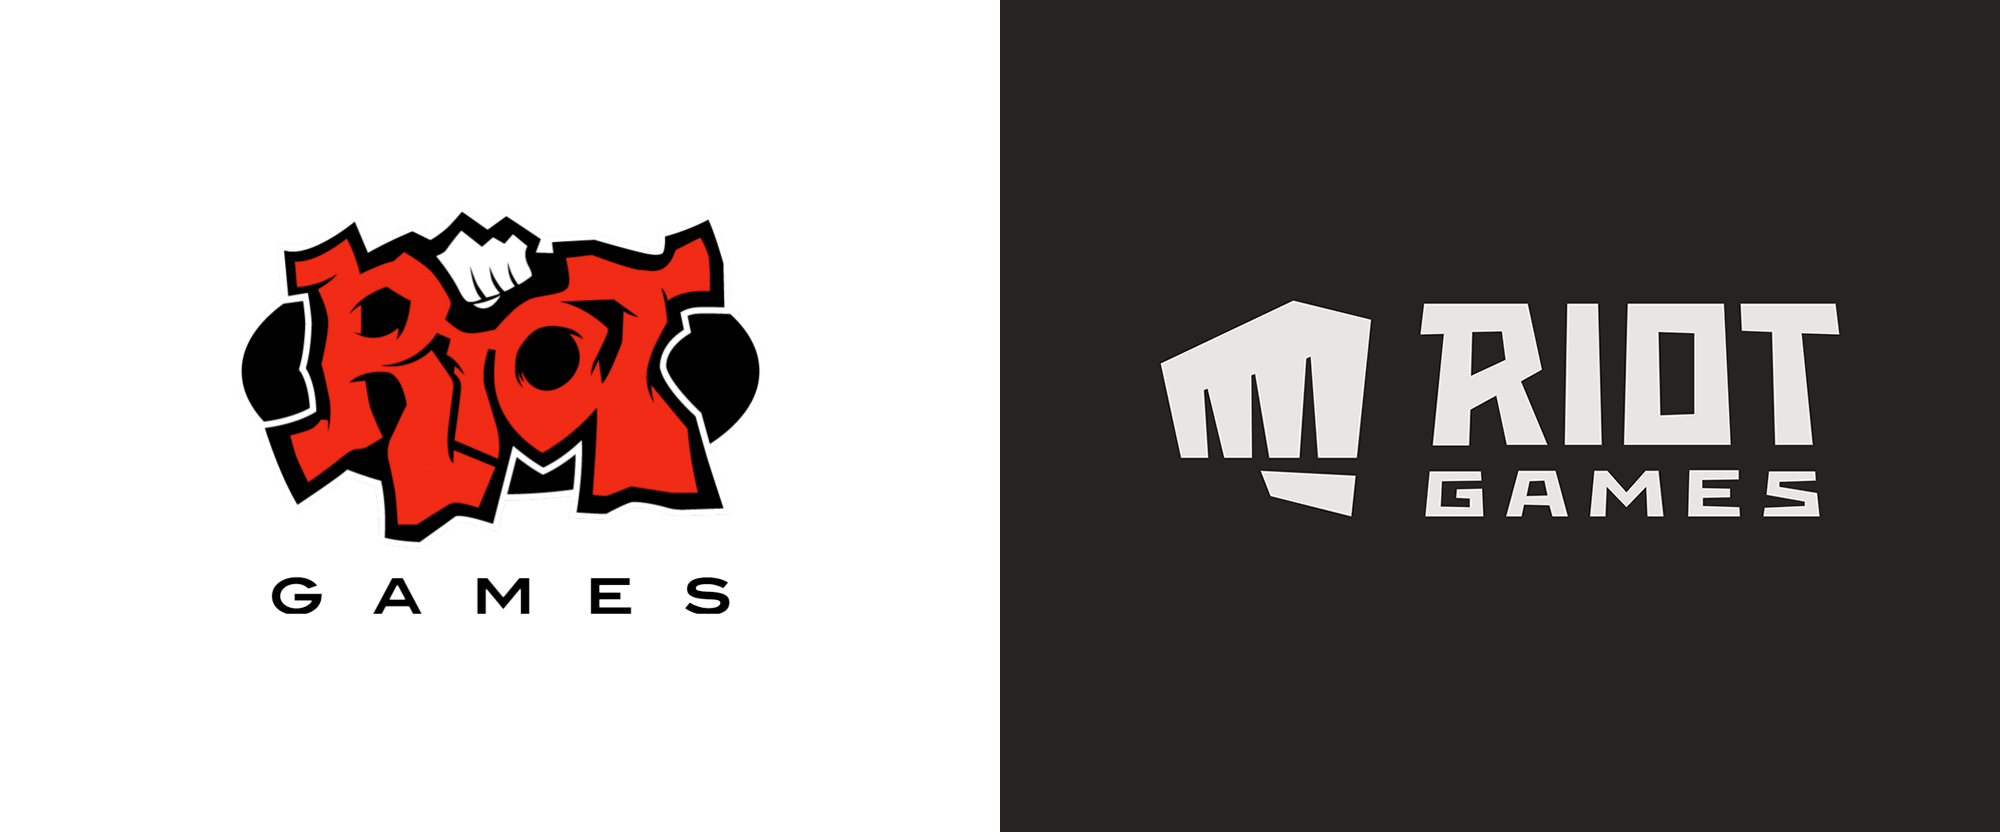 Riot games личный. Райот геймс. Riot games logo. Rinat games. Лого игровых студий.